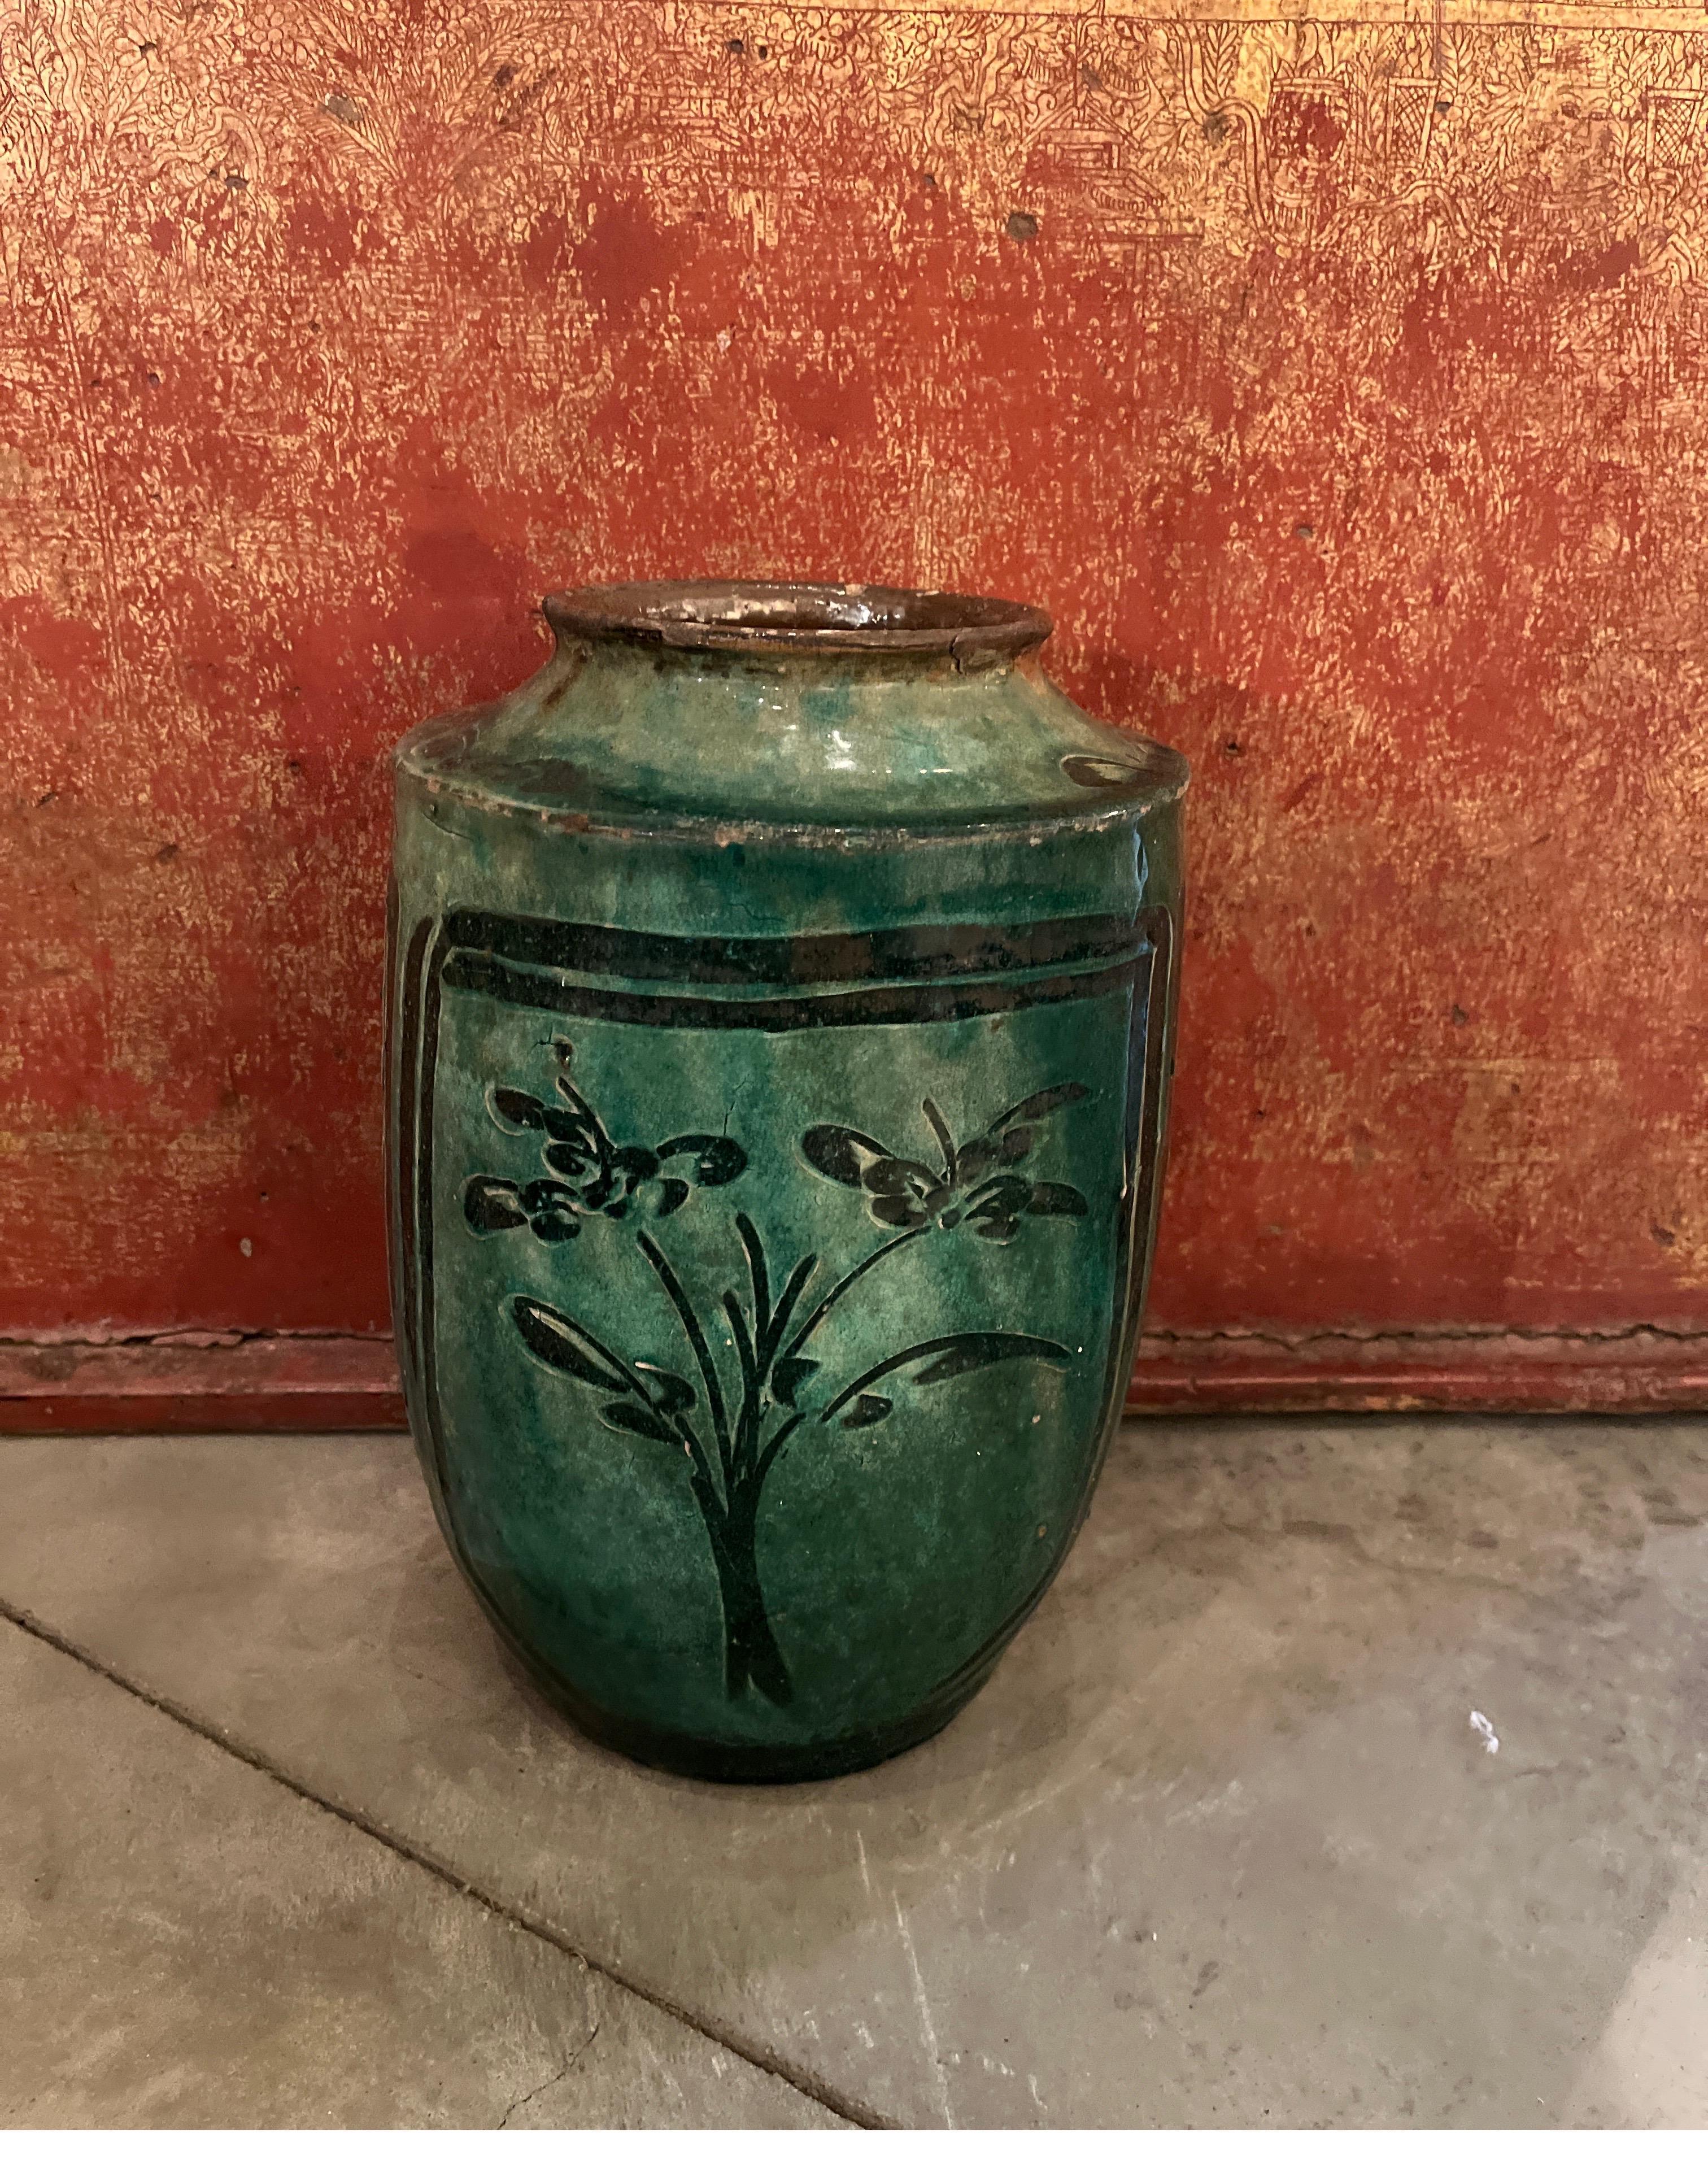 Ein atemberaubendes grün glasiertes antikes chinesisches Keramikgefäß mit drei phantasievollen und fachmännisch handgemalten Blumenbildern rund um das Gefäß. Dieses Stück leuchtet förmlich vor Geschichte und lebendigen Farben. Bemerkenswerte